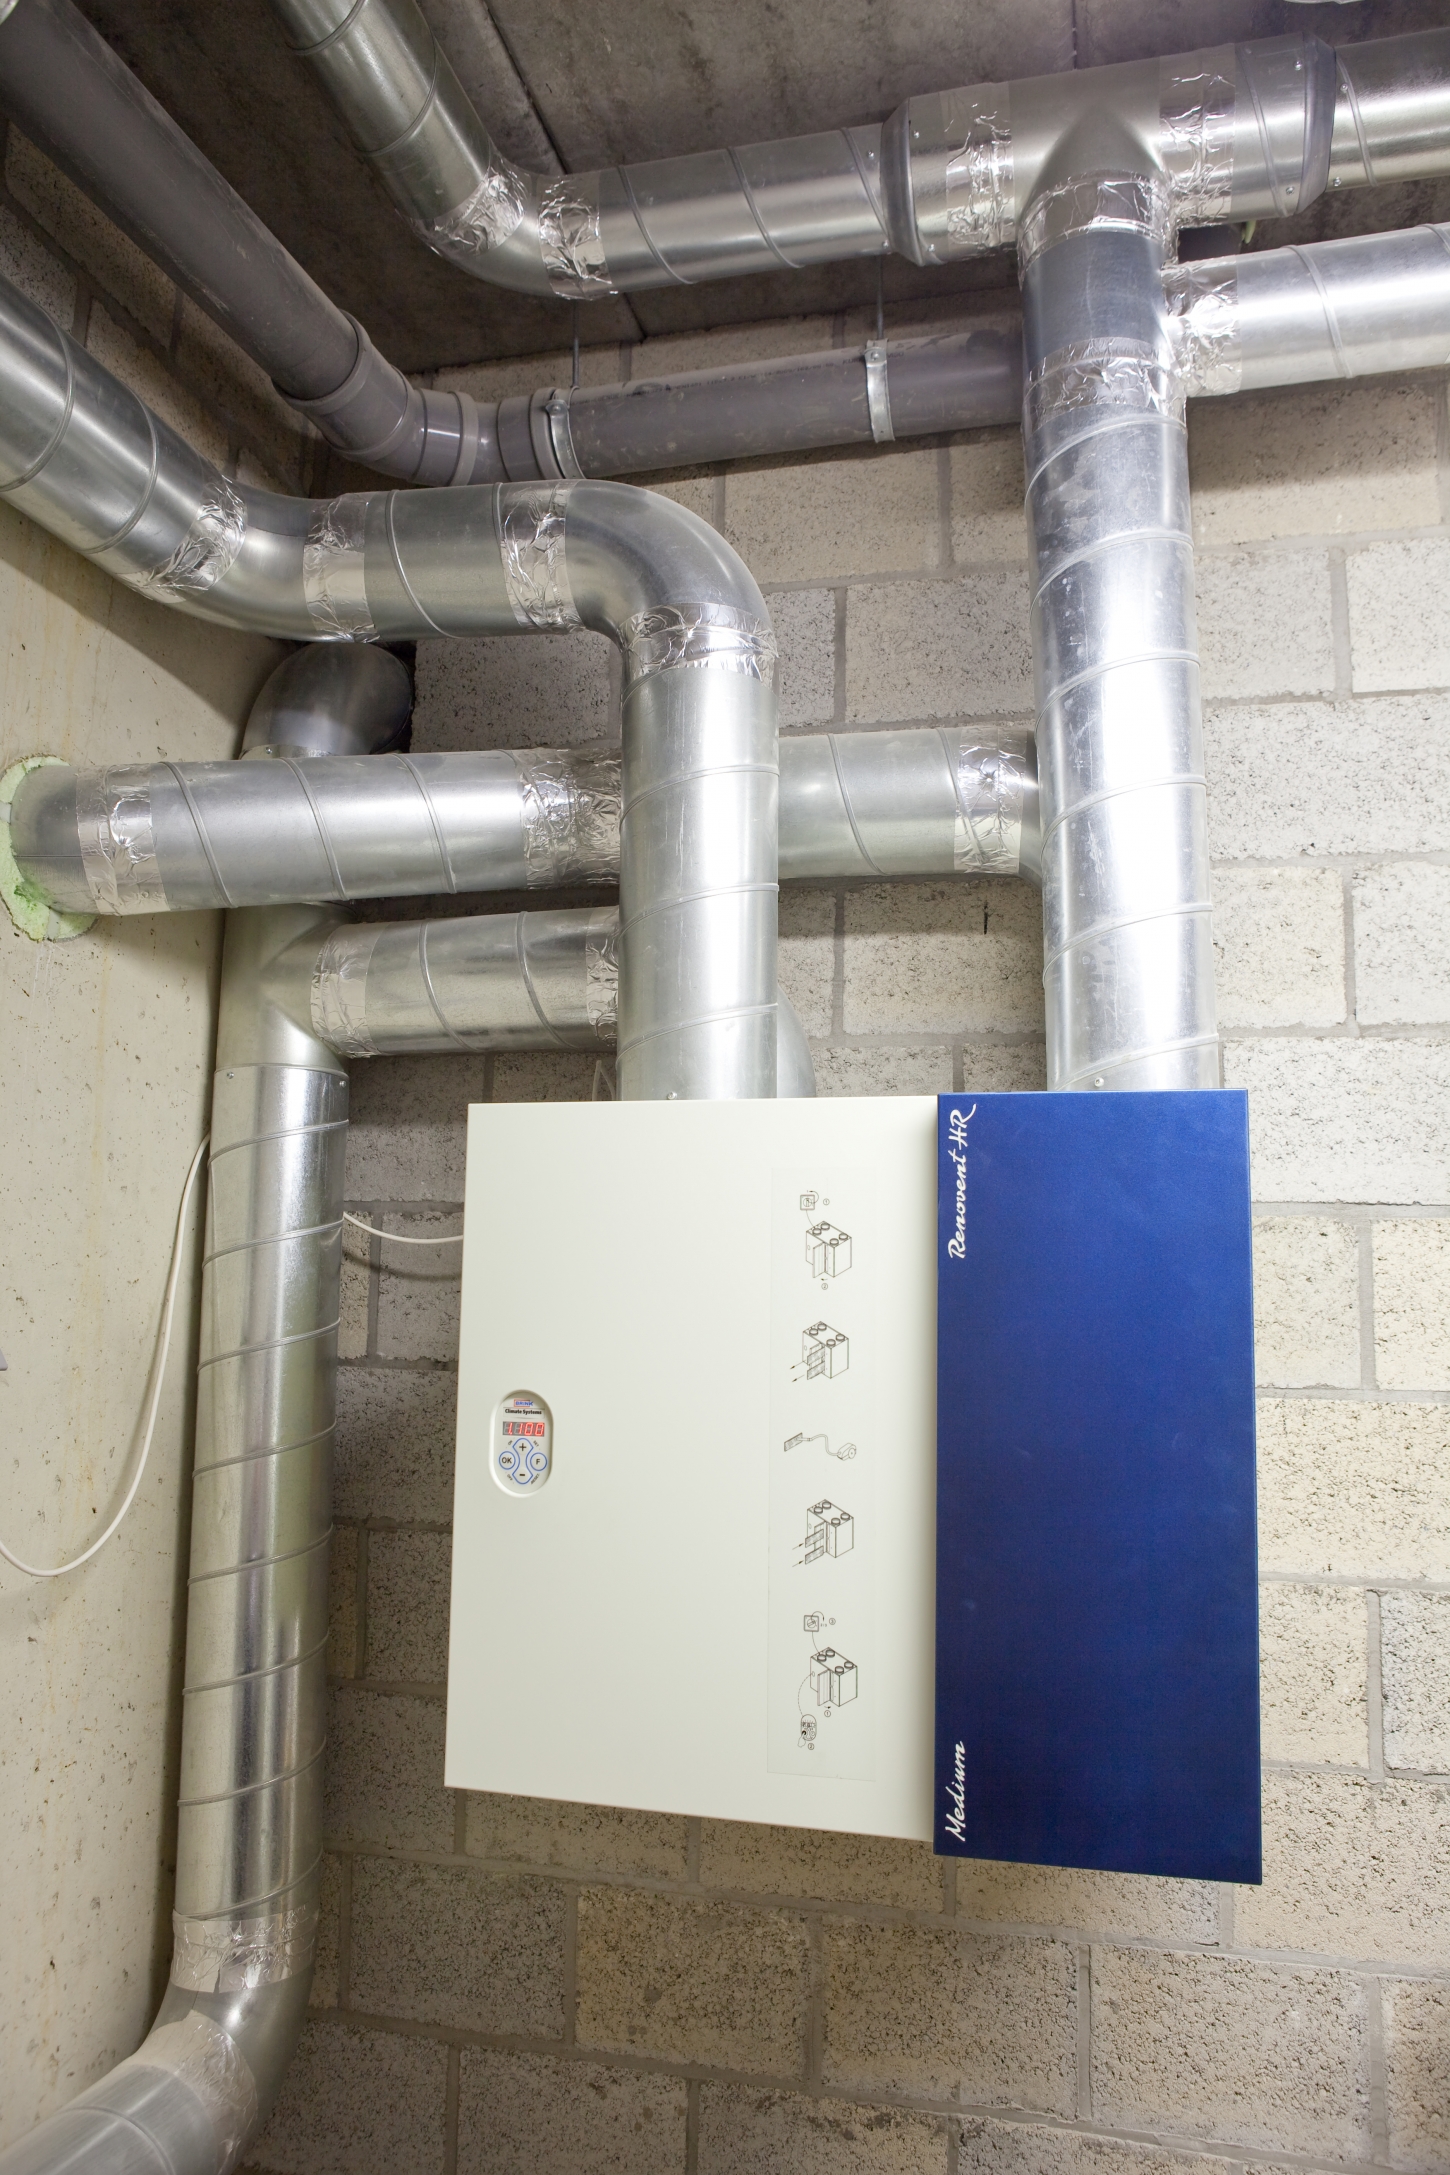 Het systeem filtert toegevoerde lucht permanent en compenseert het warmteverlies.